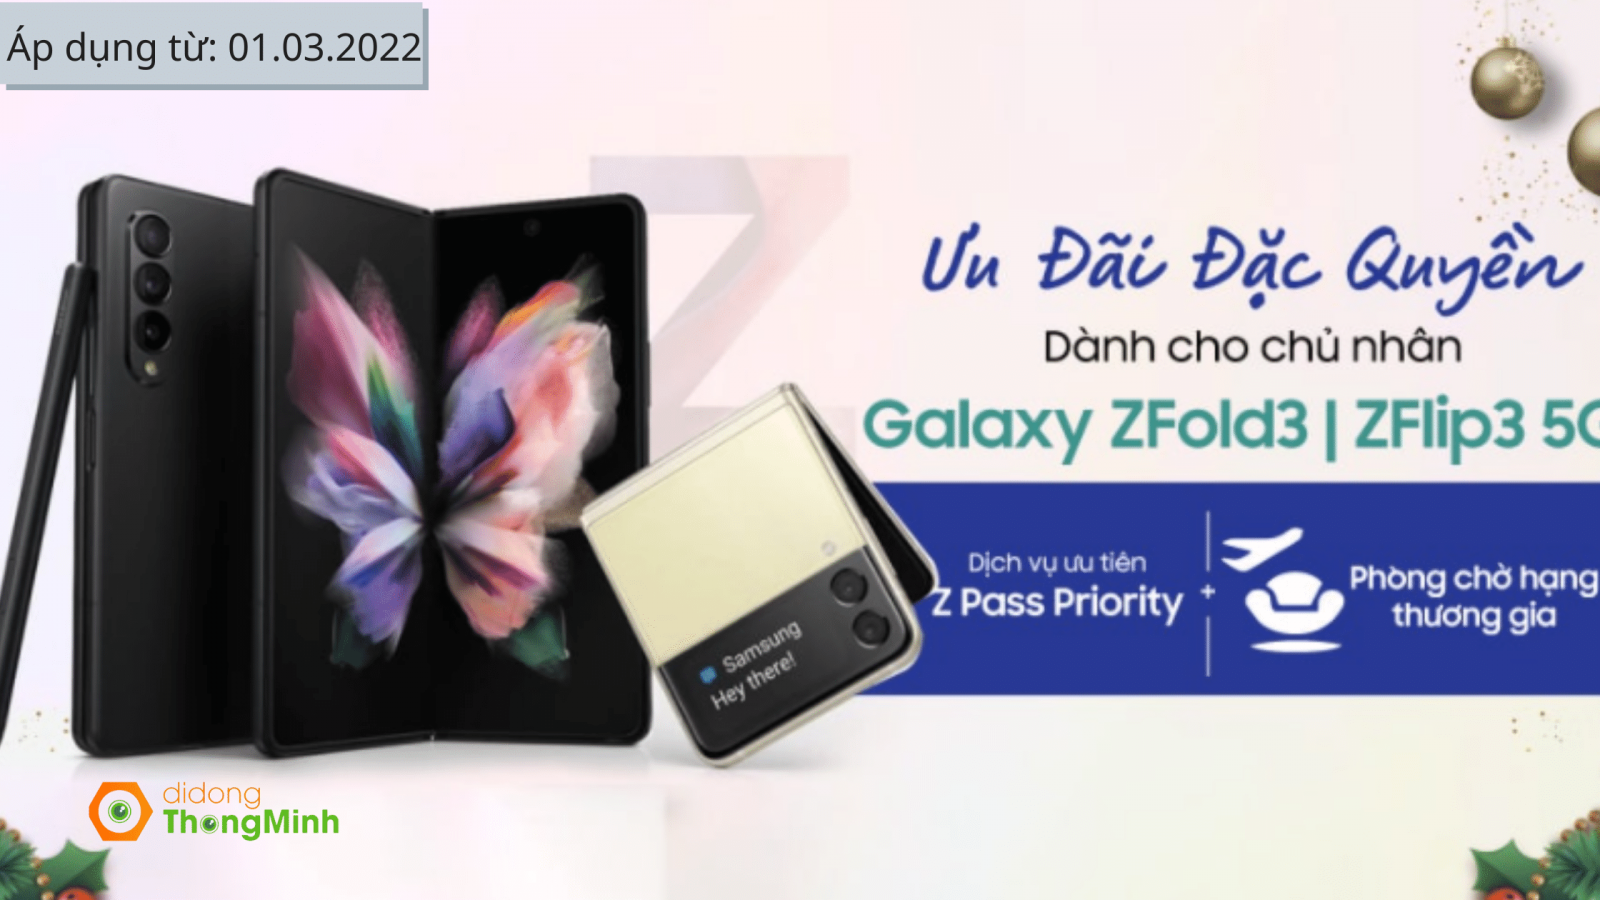 Ưu đãi dành Galaxy Z Fold3 5G và Z Flip3 5G